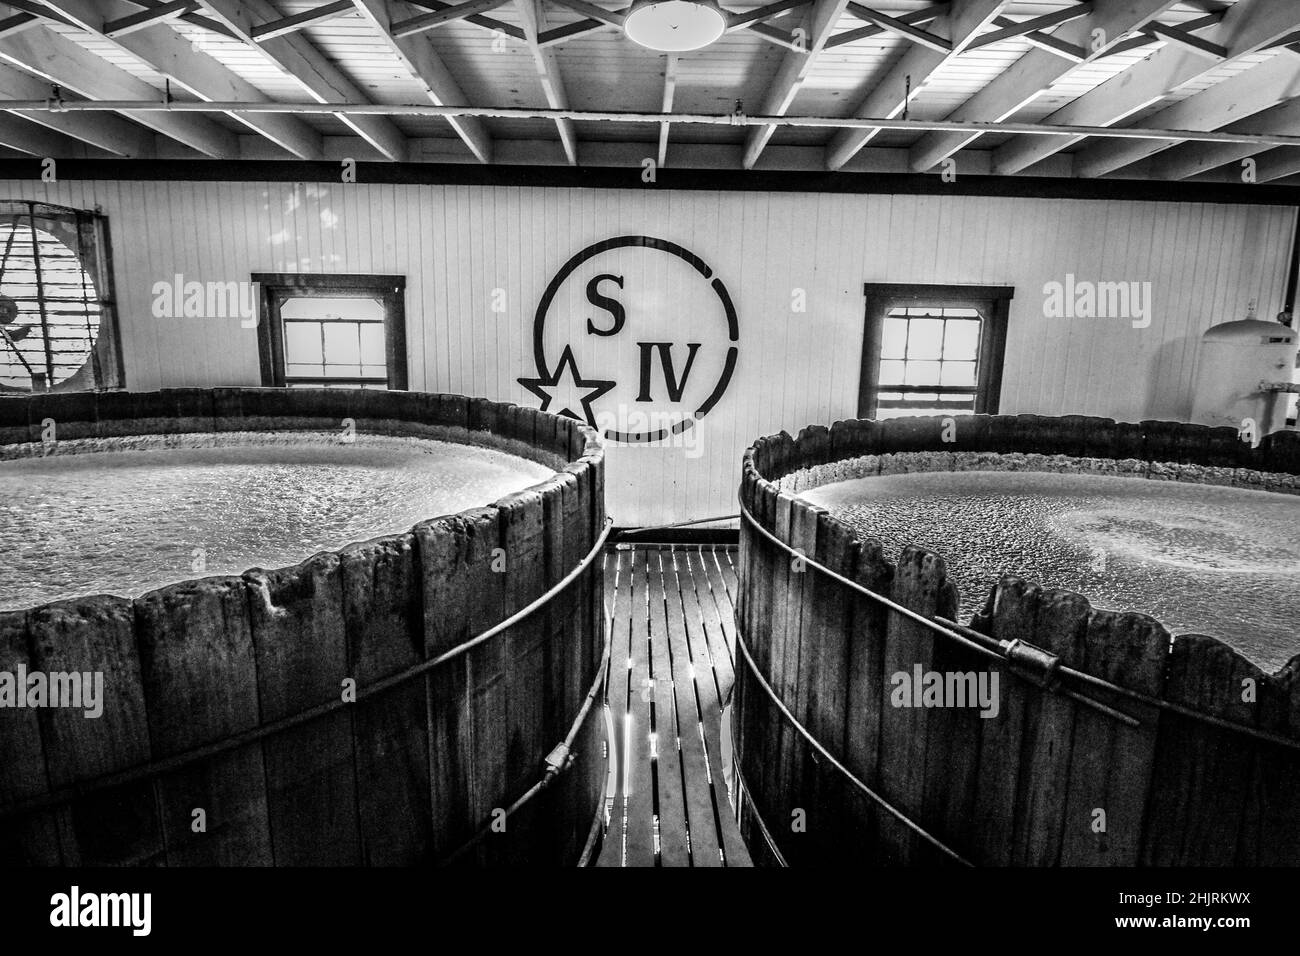 Observez le bourbon dans ces vieux fermenteurs en bois du Kentucky. Banque D'Images